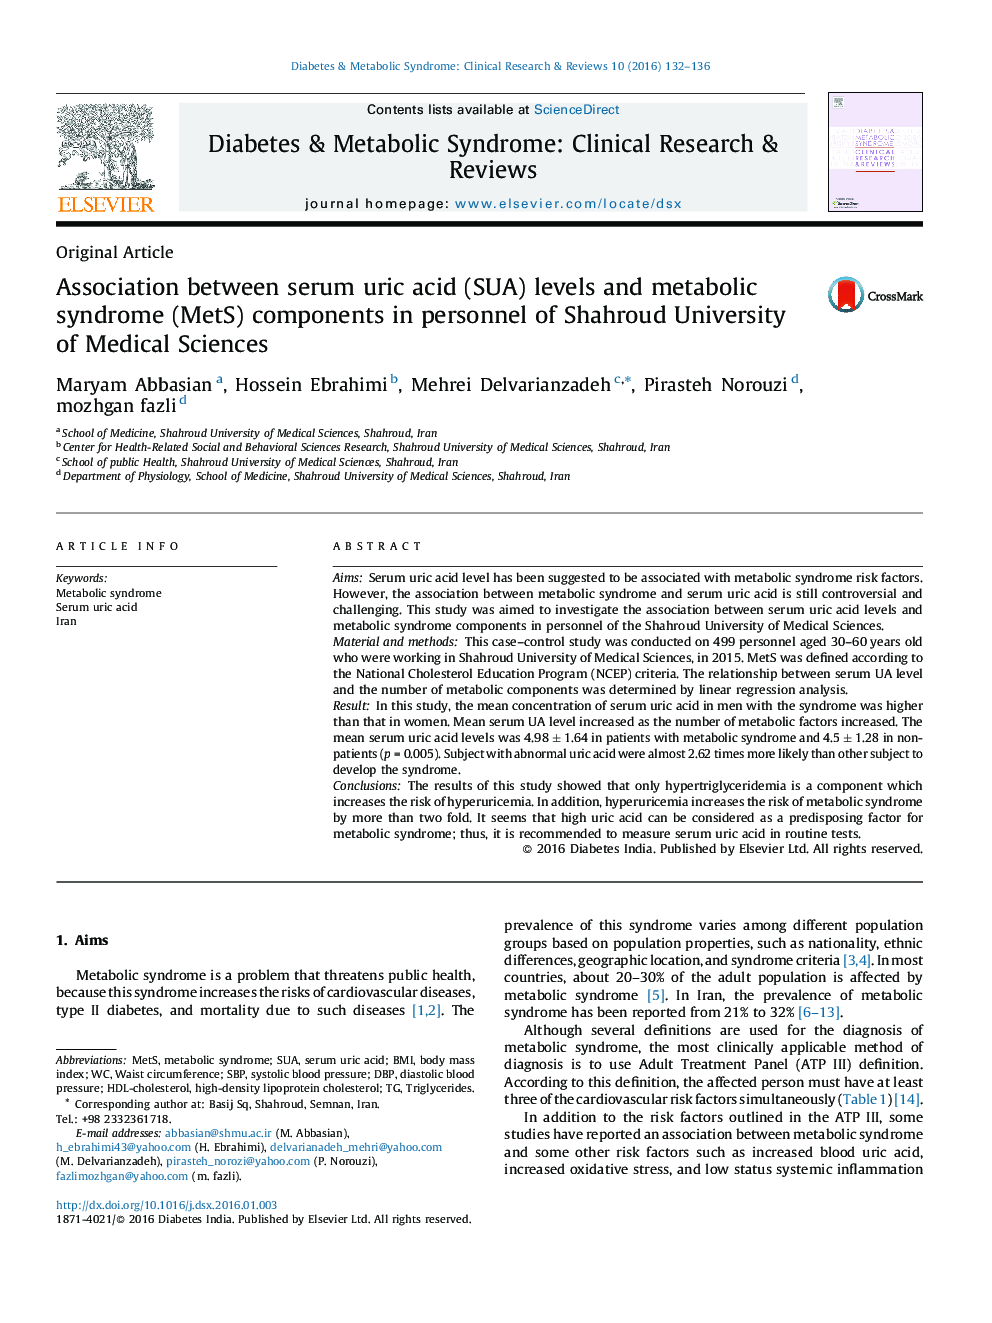 ارتباط بین سطوح اسید اوریک سرم (SUA) و مولفه های سندرم متابولیک (MetS) در پرسنل دانشگاه علوم پزشکی شاهرود